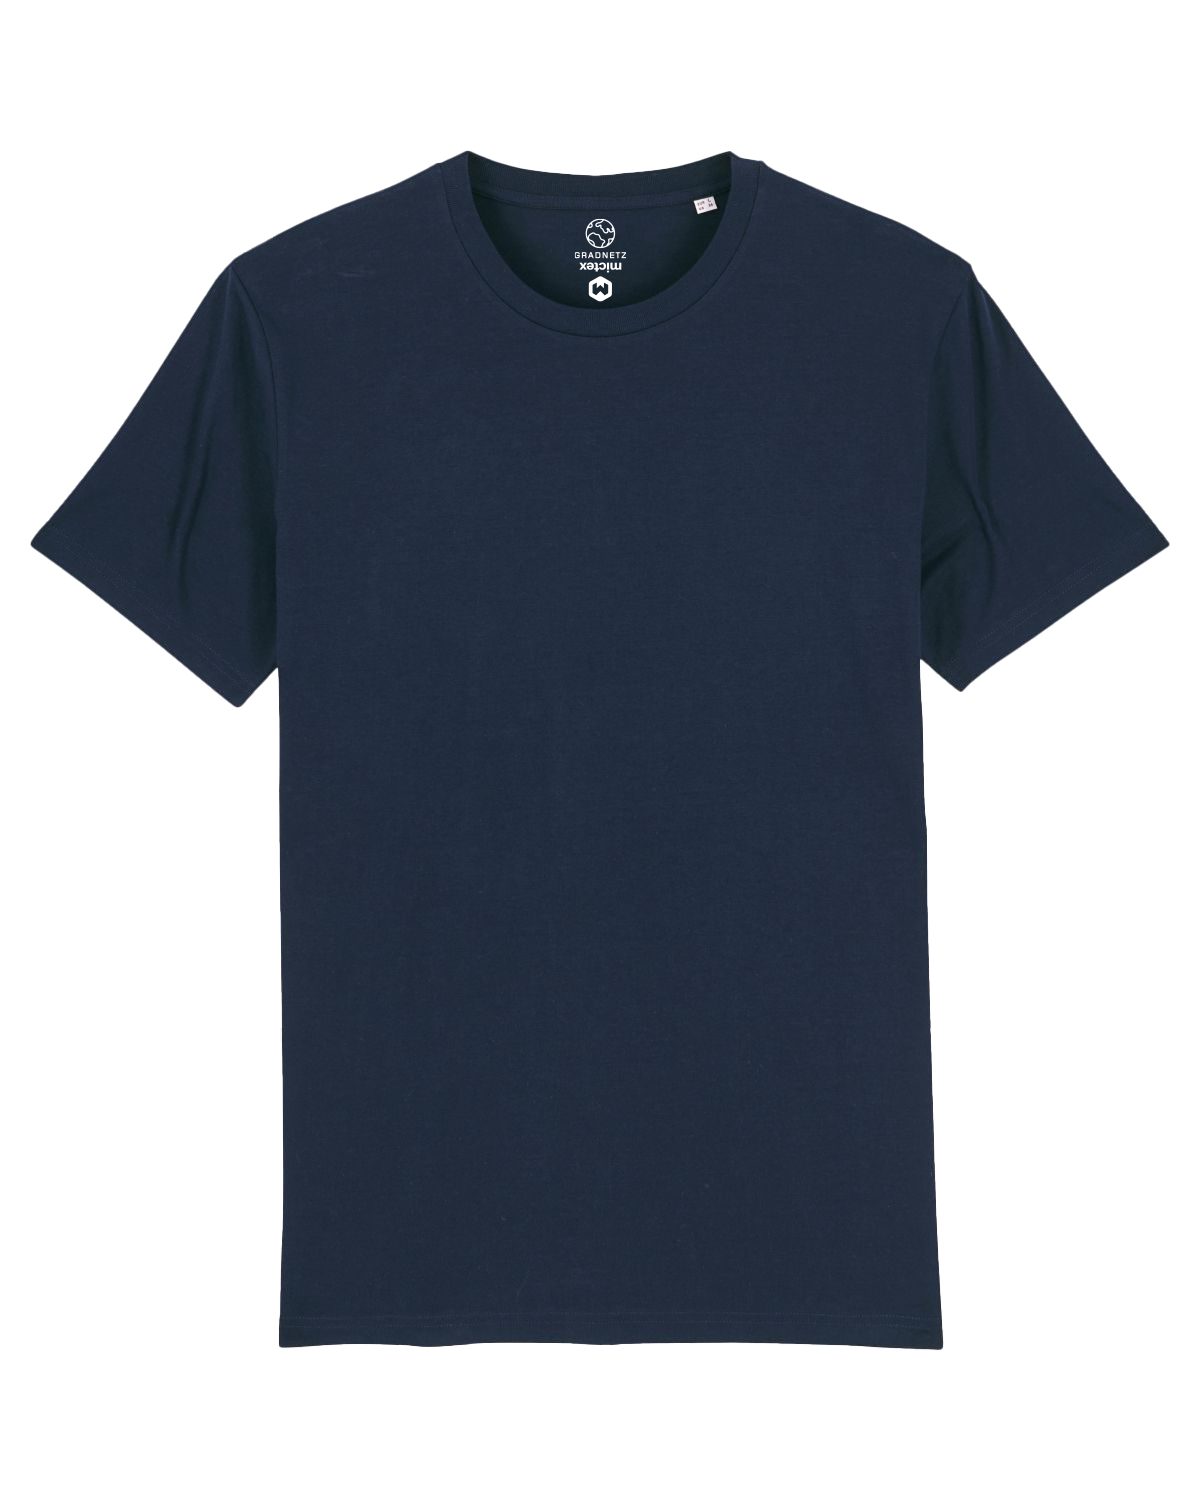 Gradnetz T-Shirt basic unisex Biobaumwolle nachhaltig & fair produziert dunkelblau